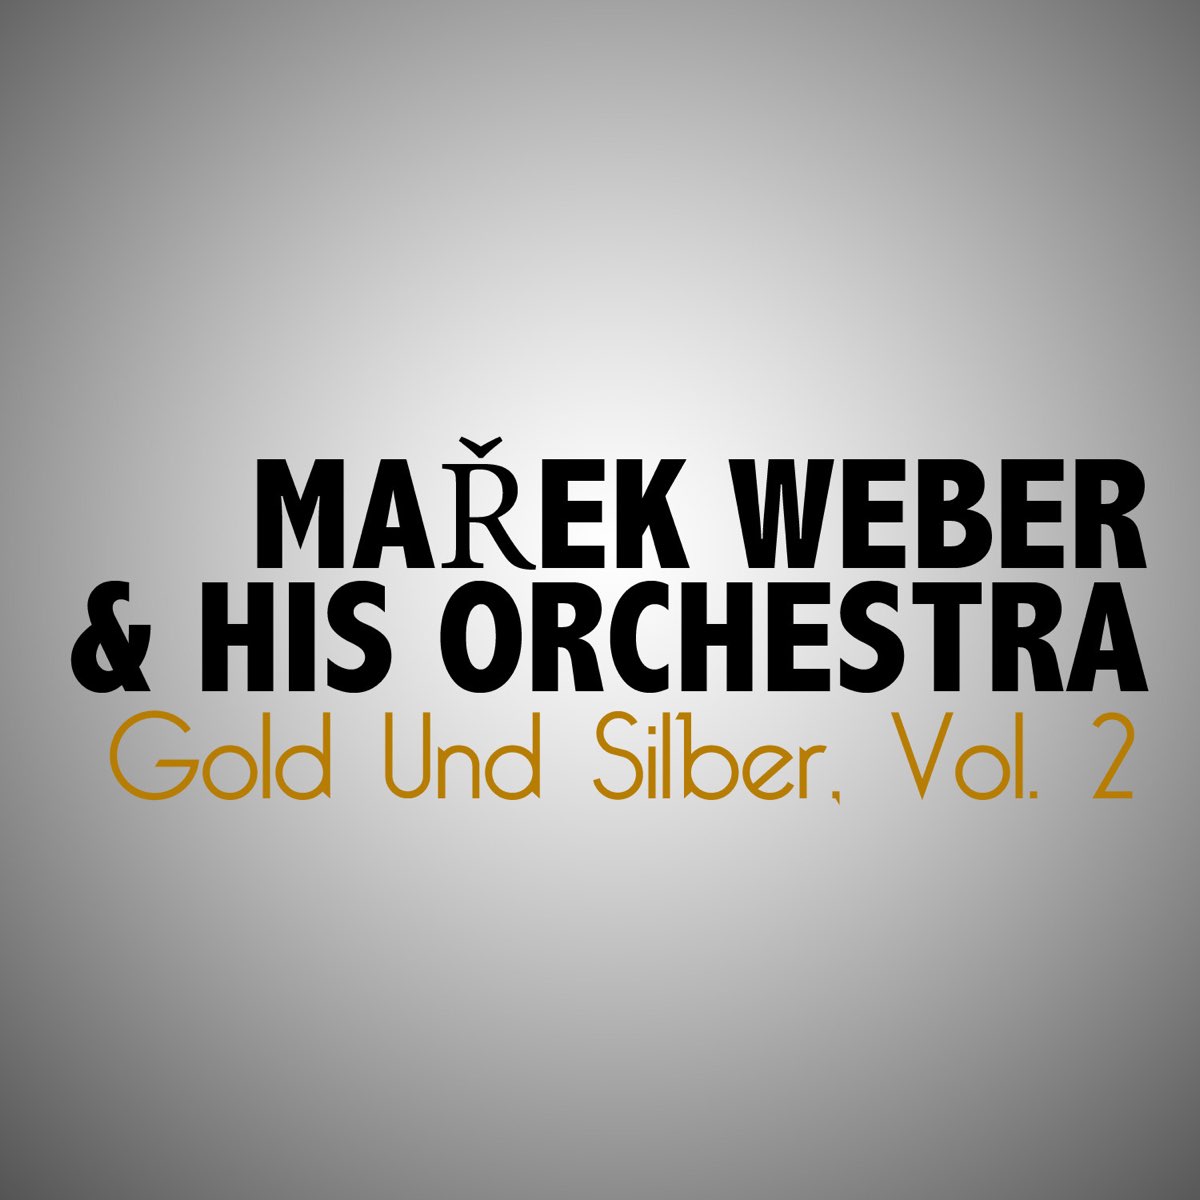 Marek Weber's Orchestra